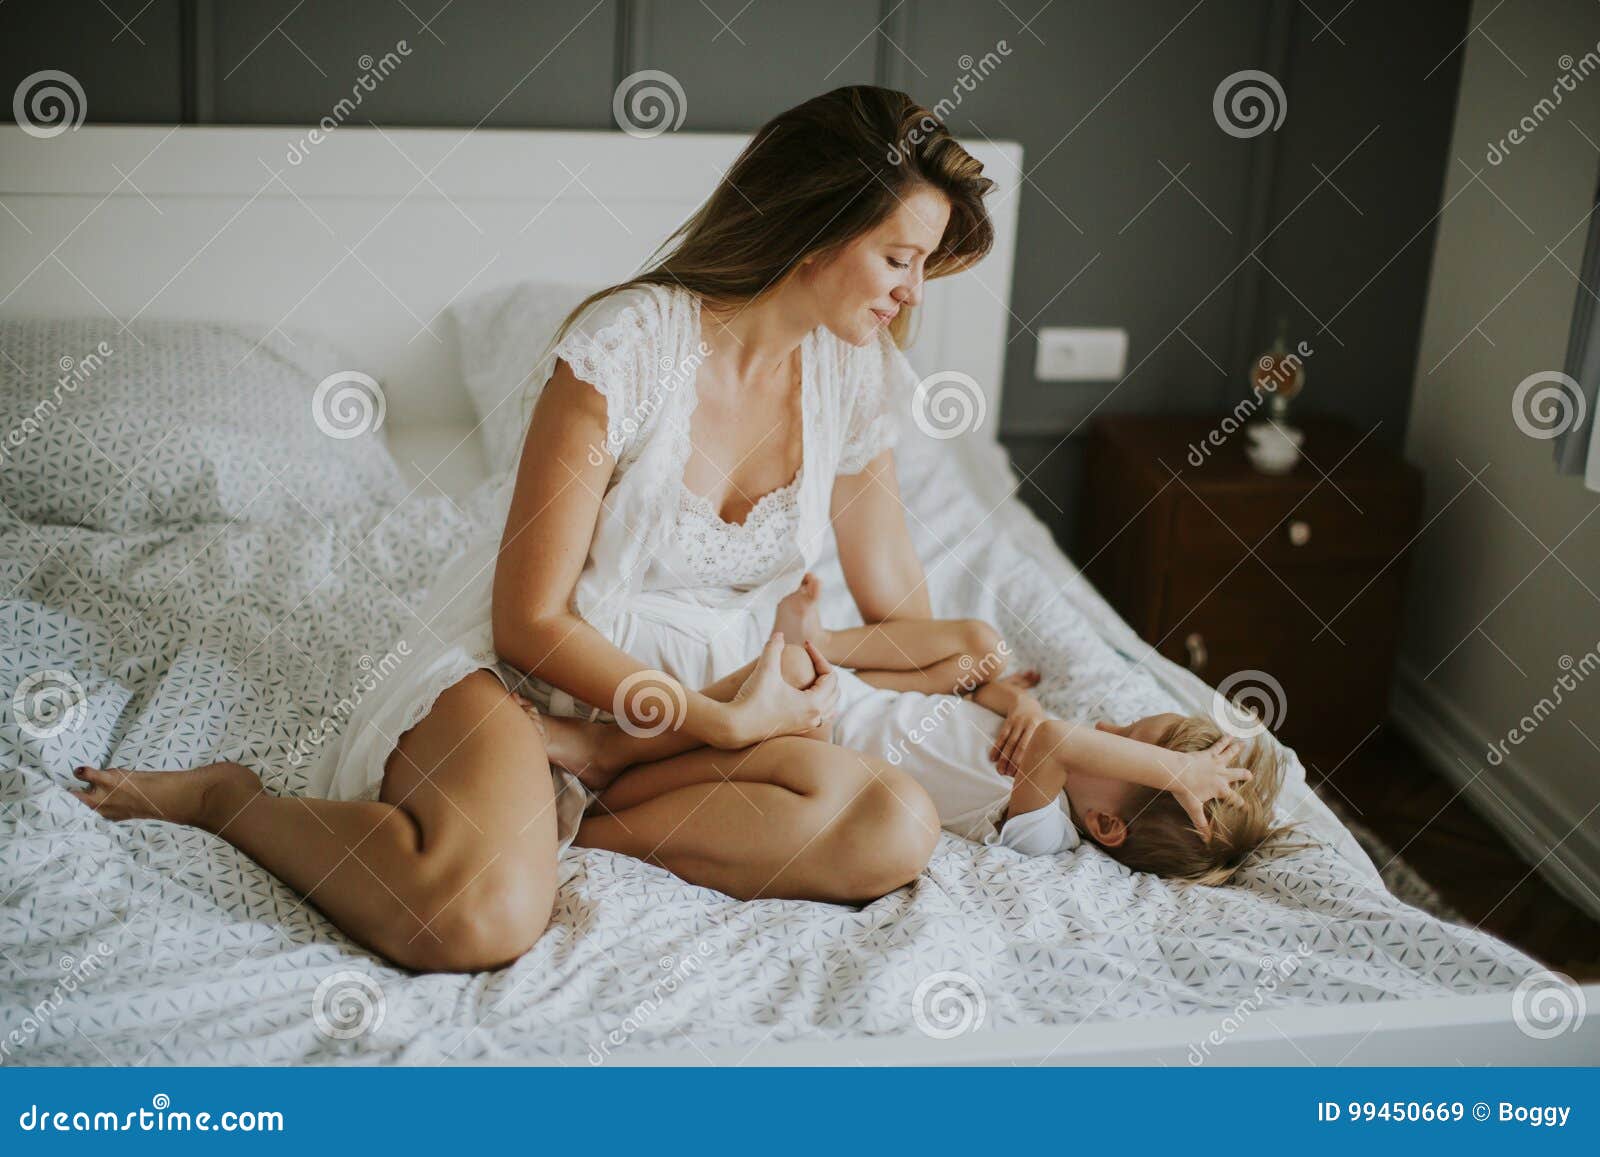 Молодые мамы в постели. Мать у кровати. Мамочки на кровати. Женщина и мальчик в постели. Сильно возбужденные мамы